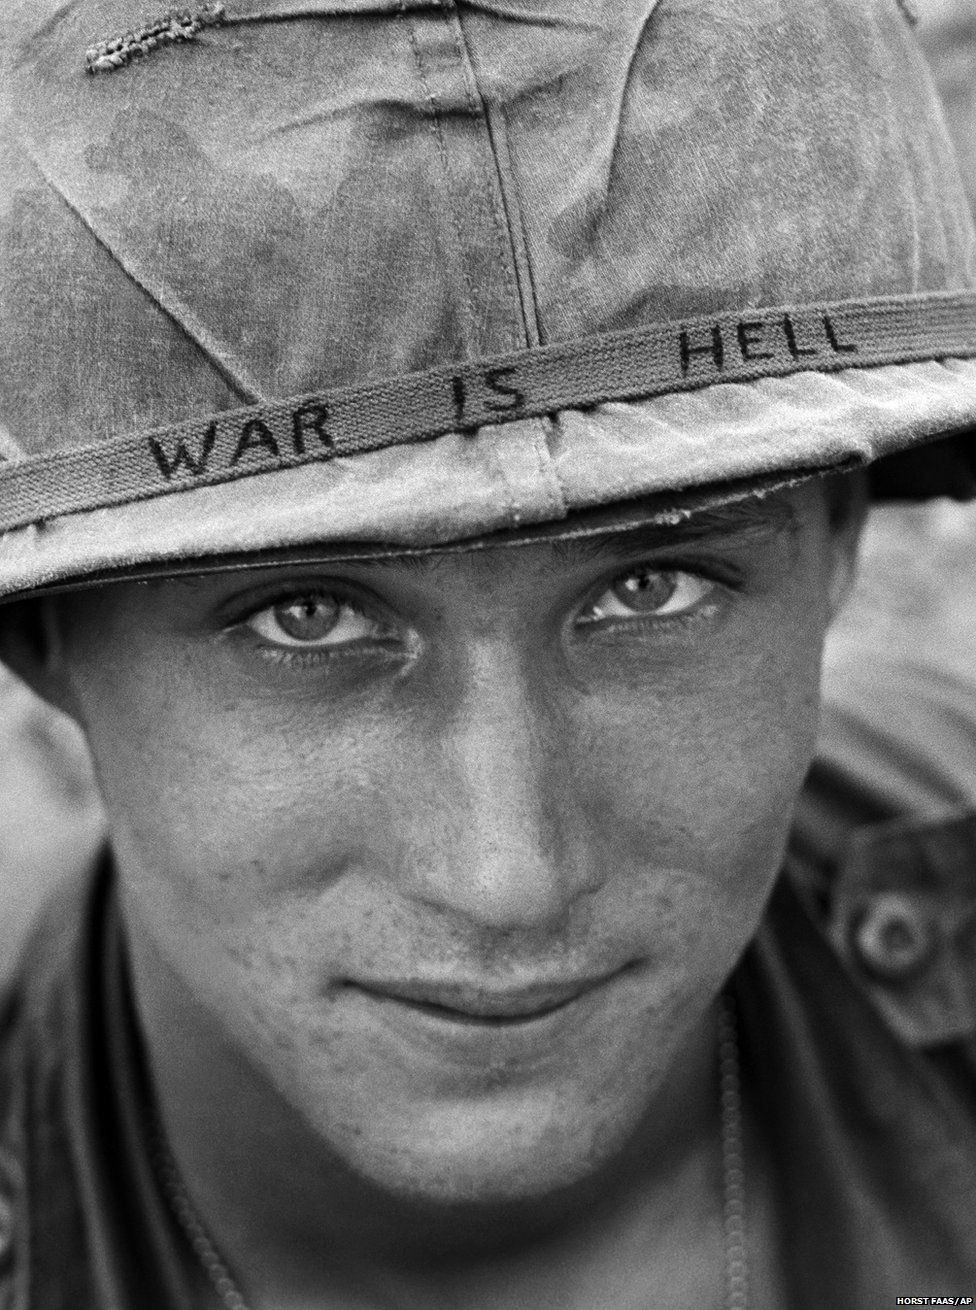 An unidentified American soldier wears a hand written slogan on his helmet in June 1965